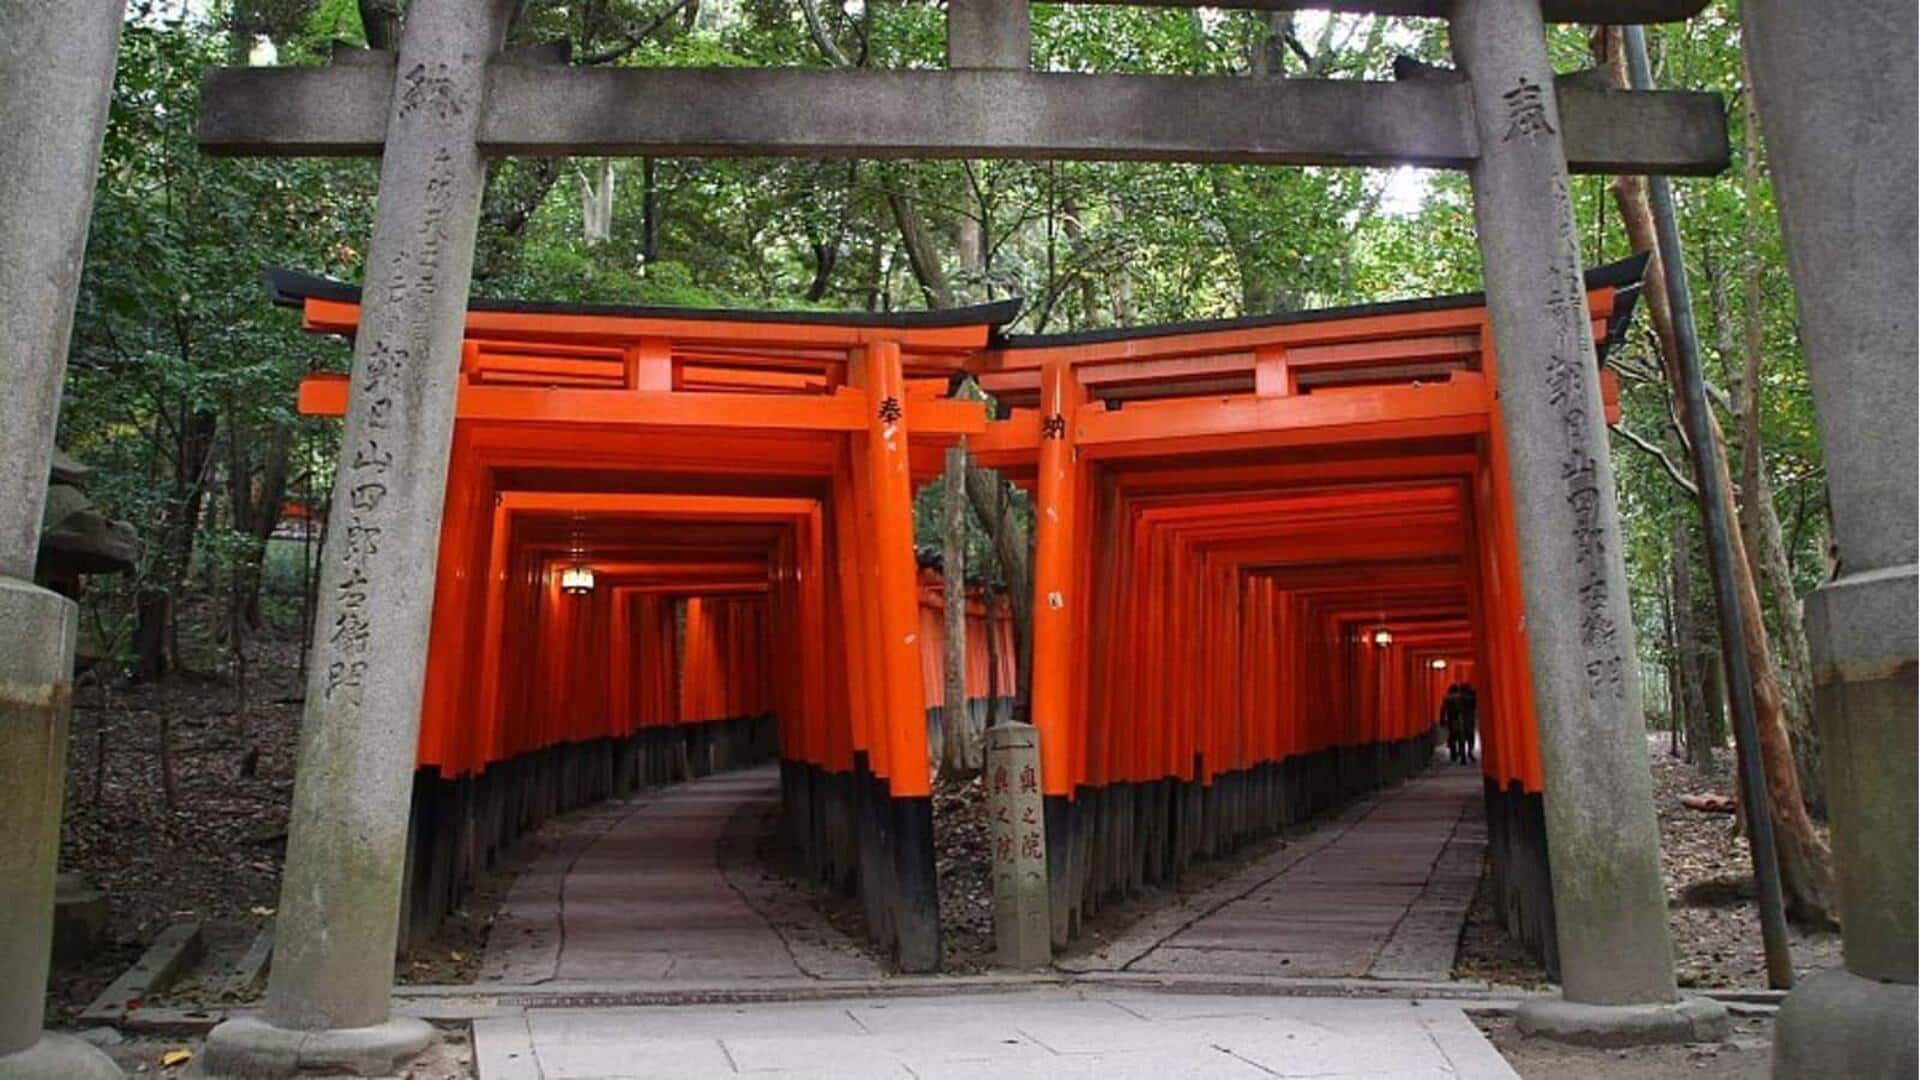 Kuil Jepang menawarkan perjalanan melalui ketenangan dan tradisi